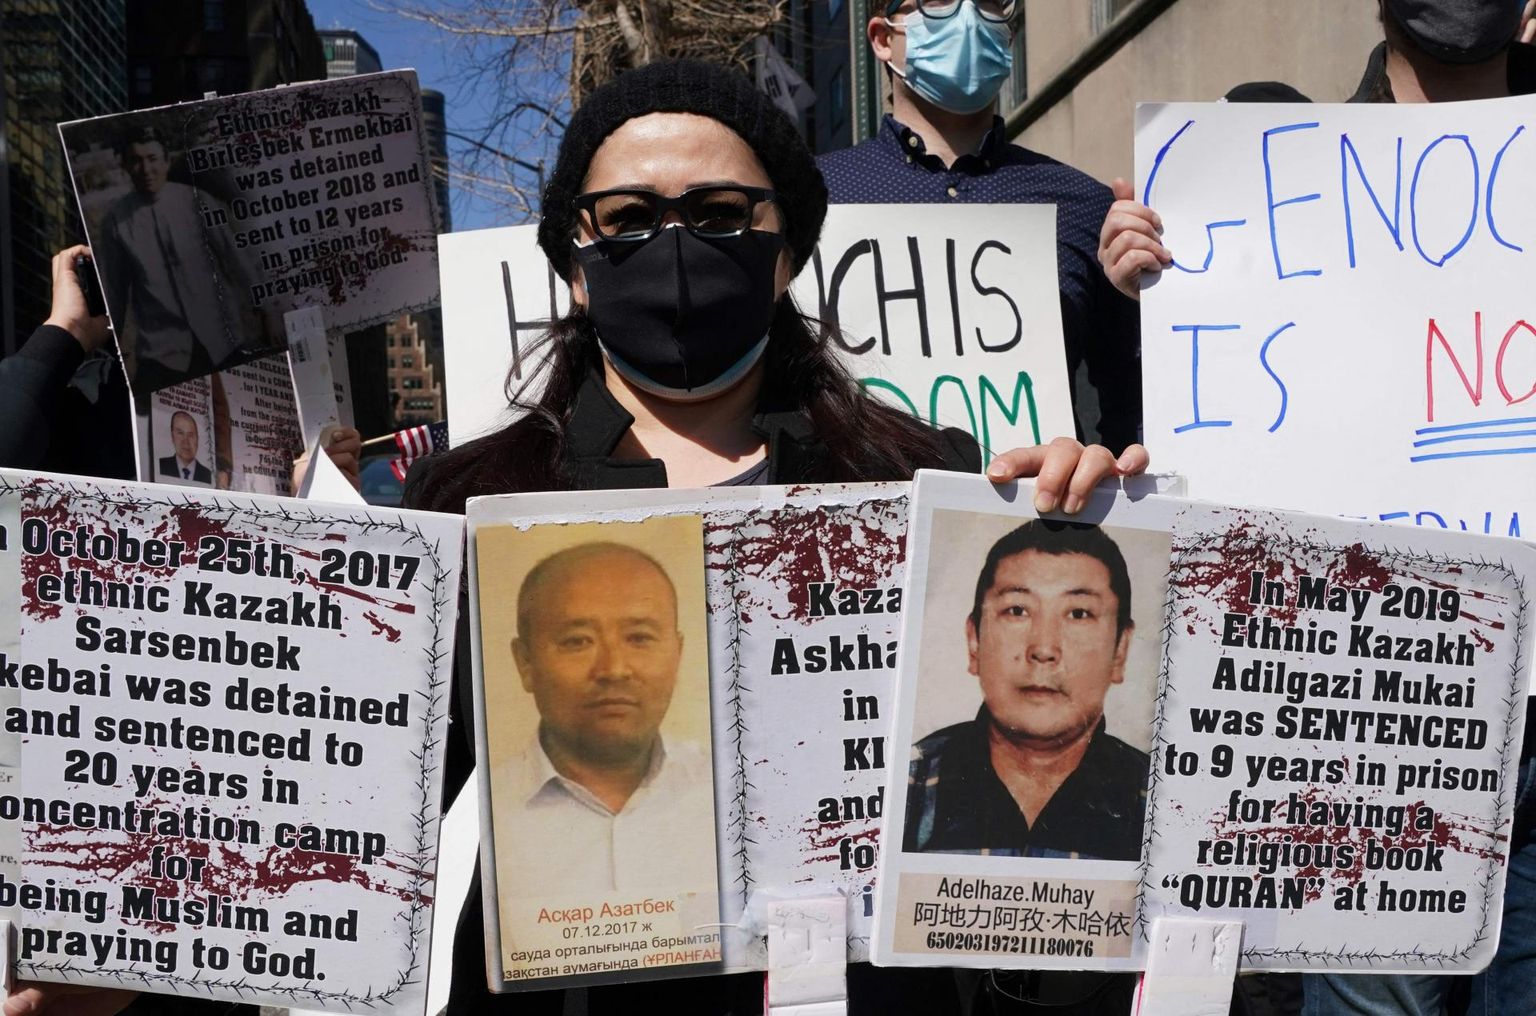 Esmaspäeval New Yorgis tänavale tulnud meeleavaldajad, kes kutsusid president Joe Bidenit avaldama Hiinale uiguuride halva kohtlemise pärast jõulisemat survet.